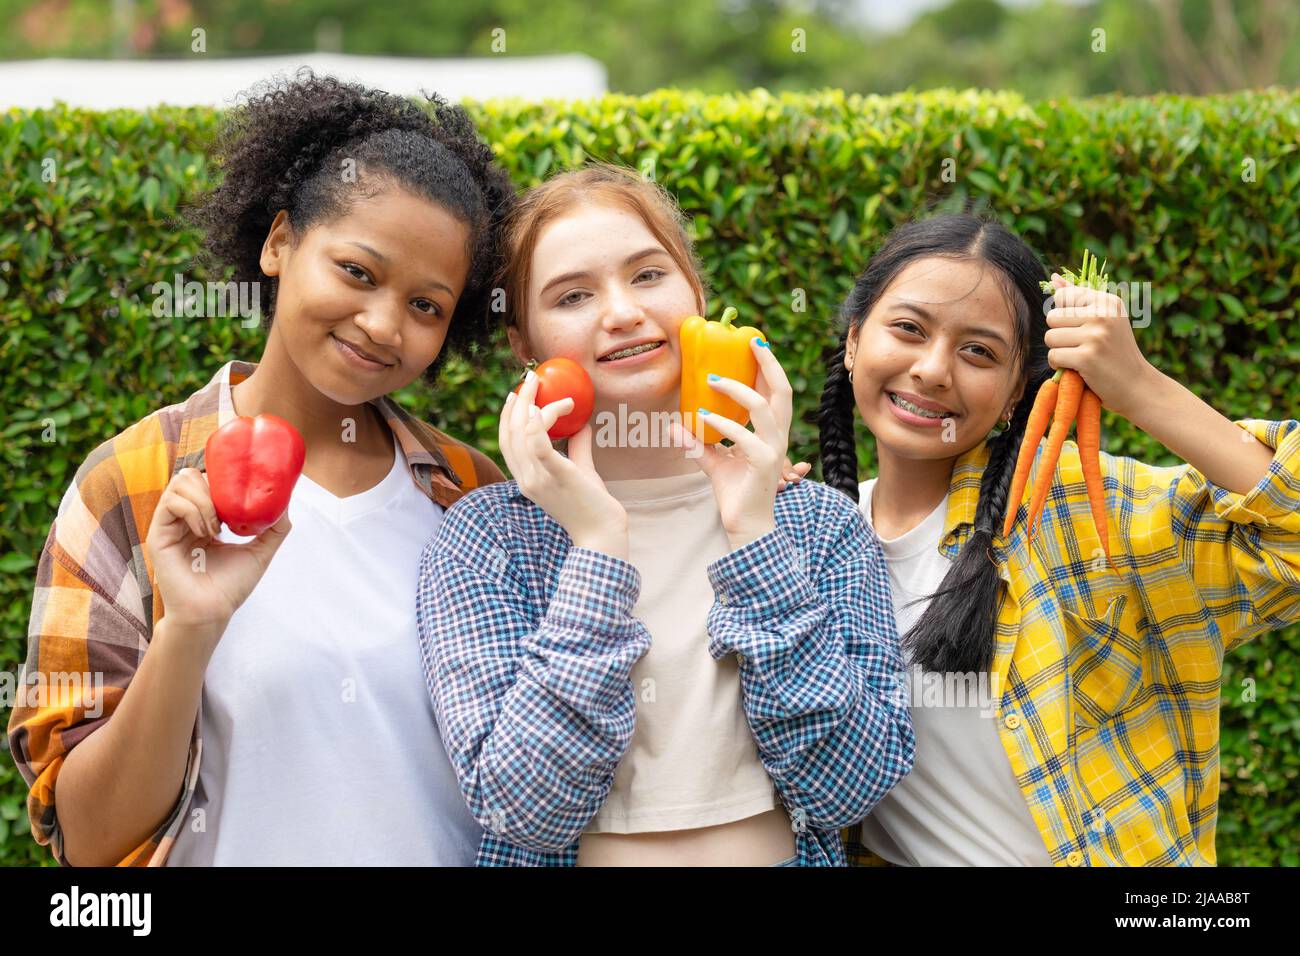 teen ragazza mix gara sorriso felice con verdure fresche da agricoltura fattoria mangiare sano concetto Foto Stock